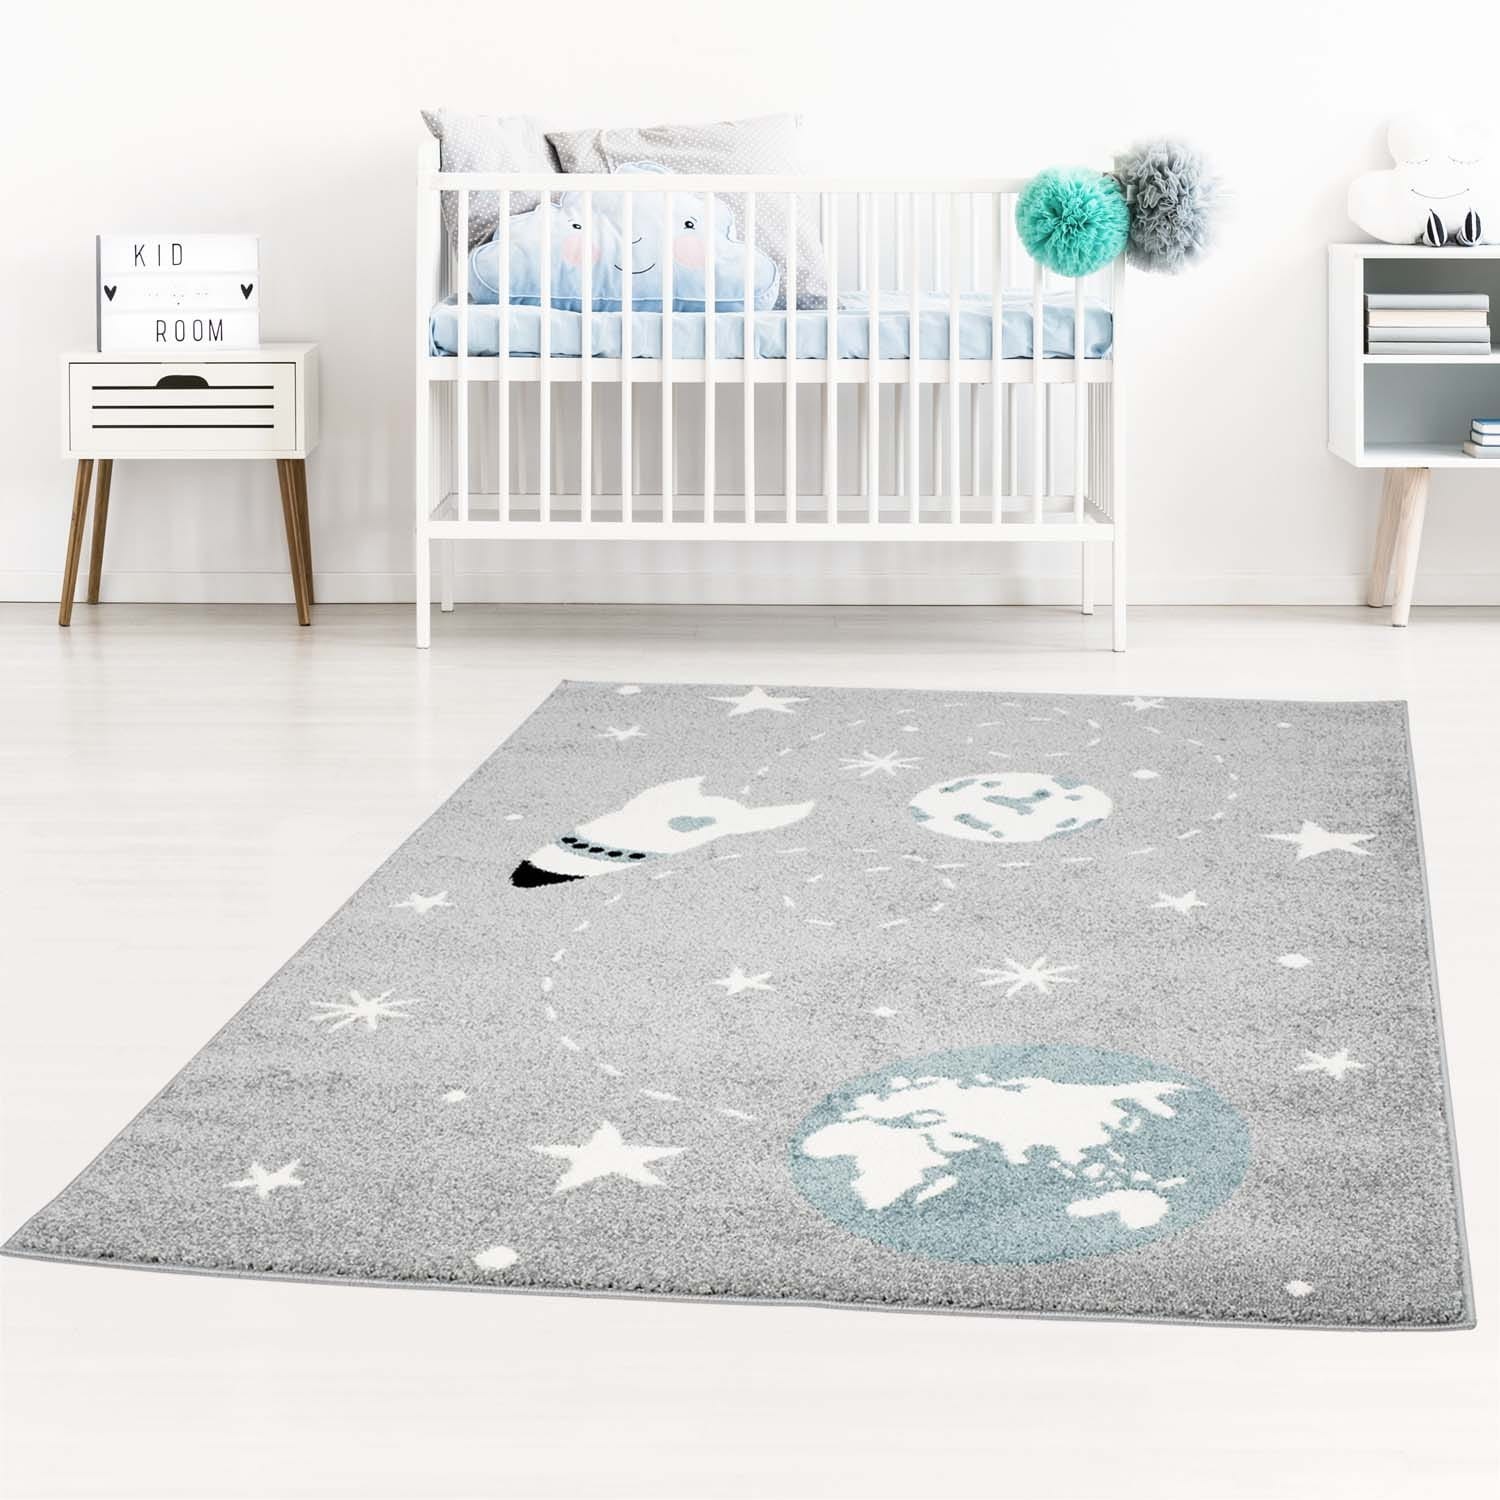 Kvalitní dětský šedý koberec vesmír